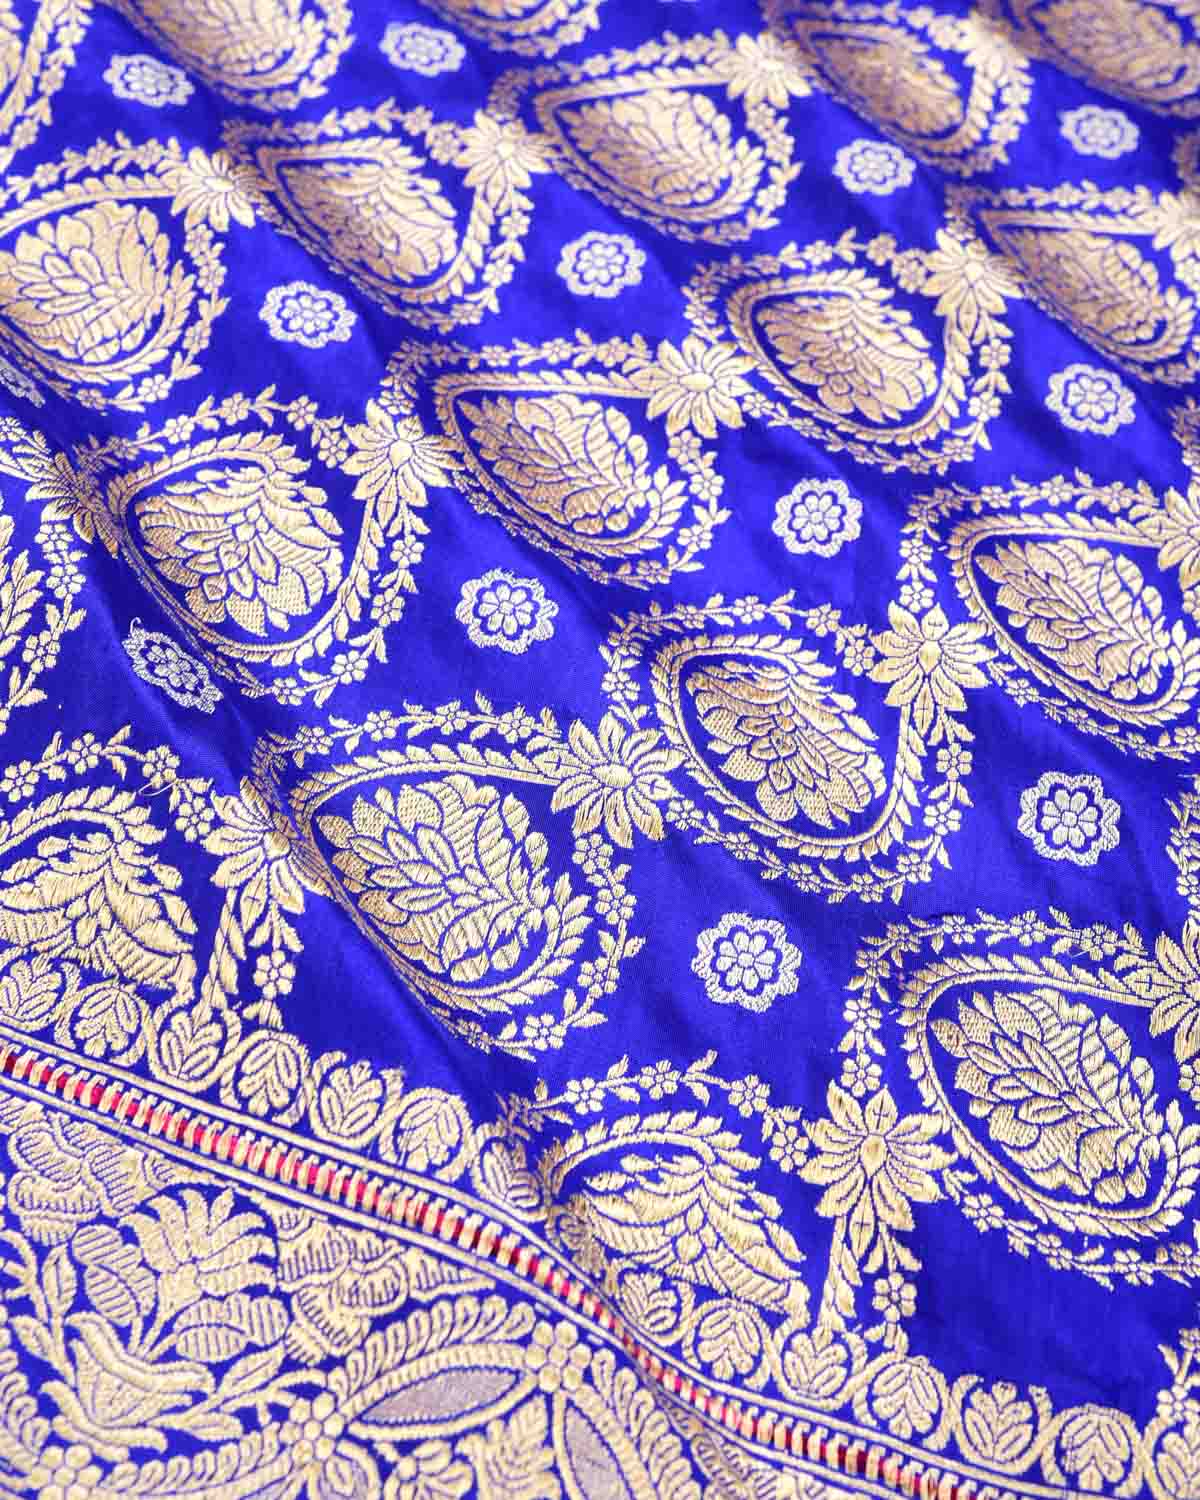 Royal Blue Banarasi Gold Zari Jaal with Silver Buti Kadhuan Brocade Handwoven Katan Silk Saree - By HolyWeaves, Benares